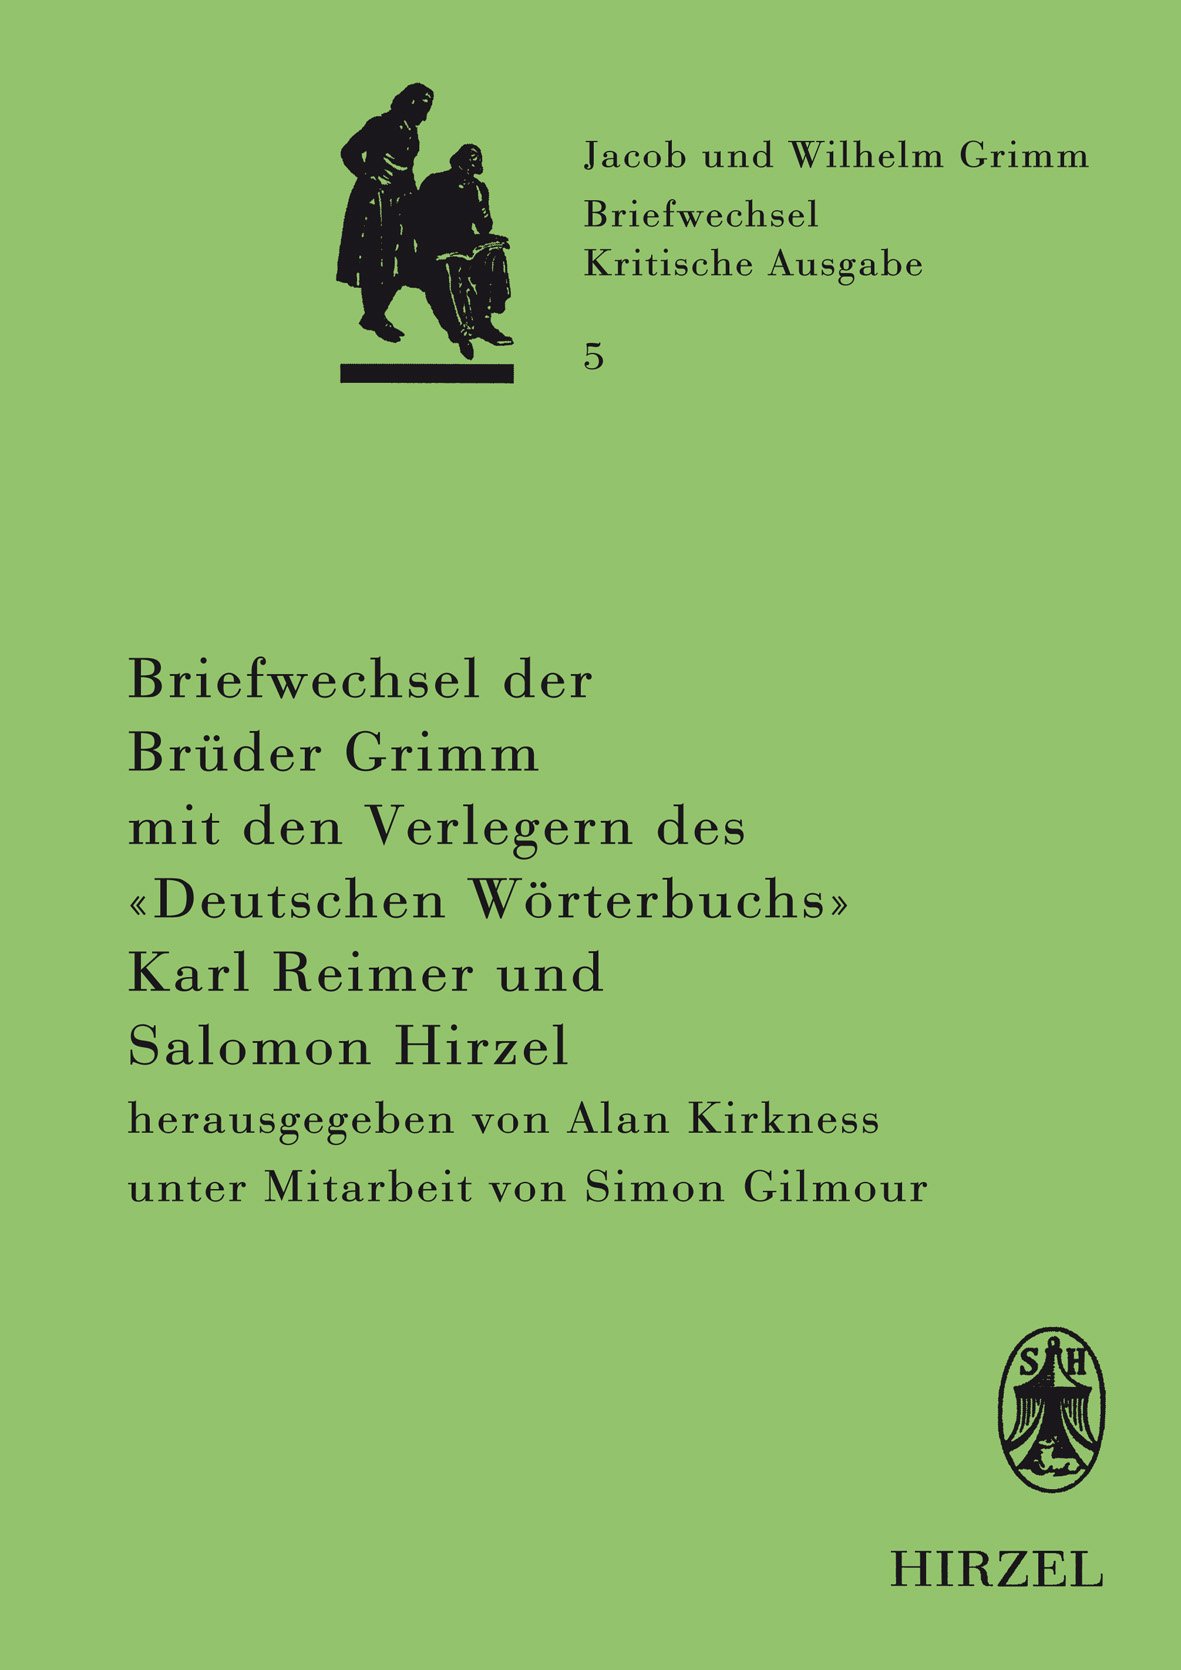 Briefwechsel der Brüder Jacob und Wilhelm Grimm mit den Verlegern des "Deutschen Wörterbuchs" Karl Reimer und Salomon Hirzel